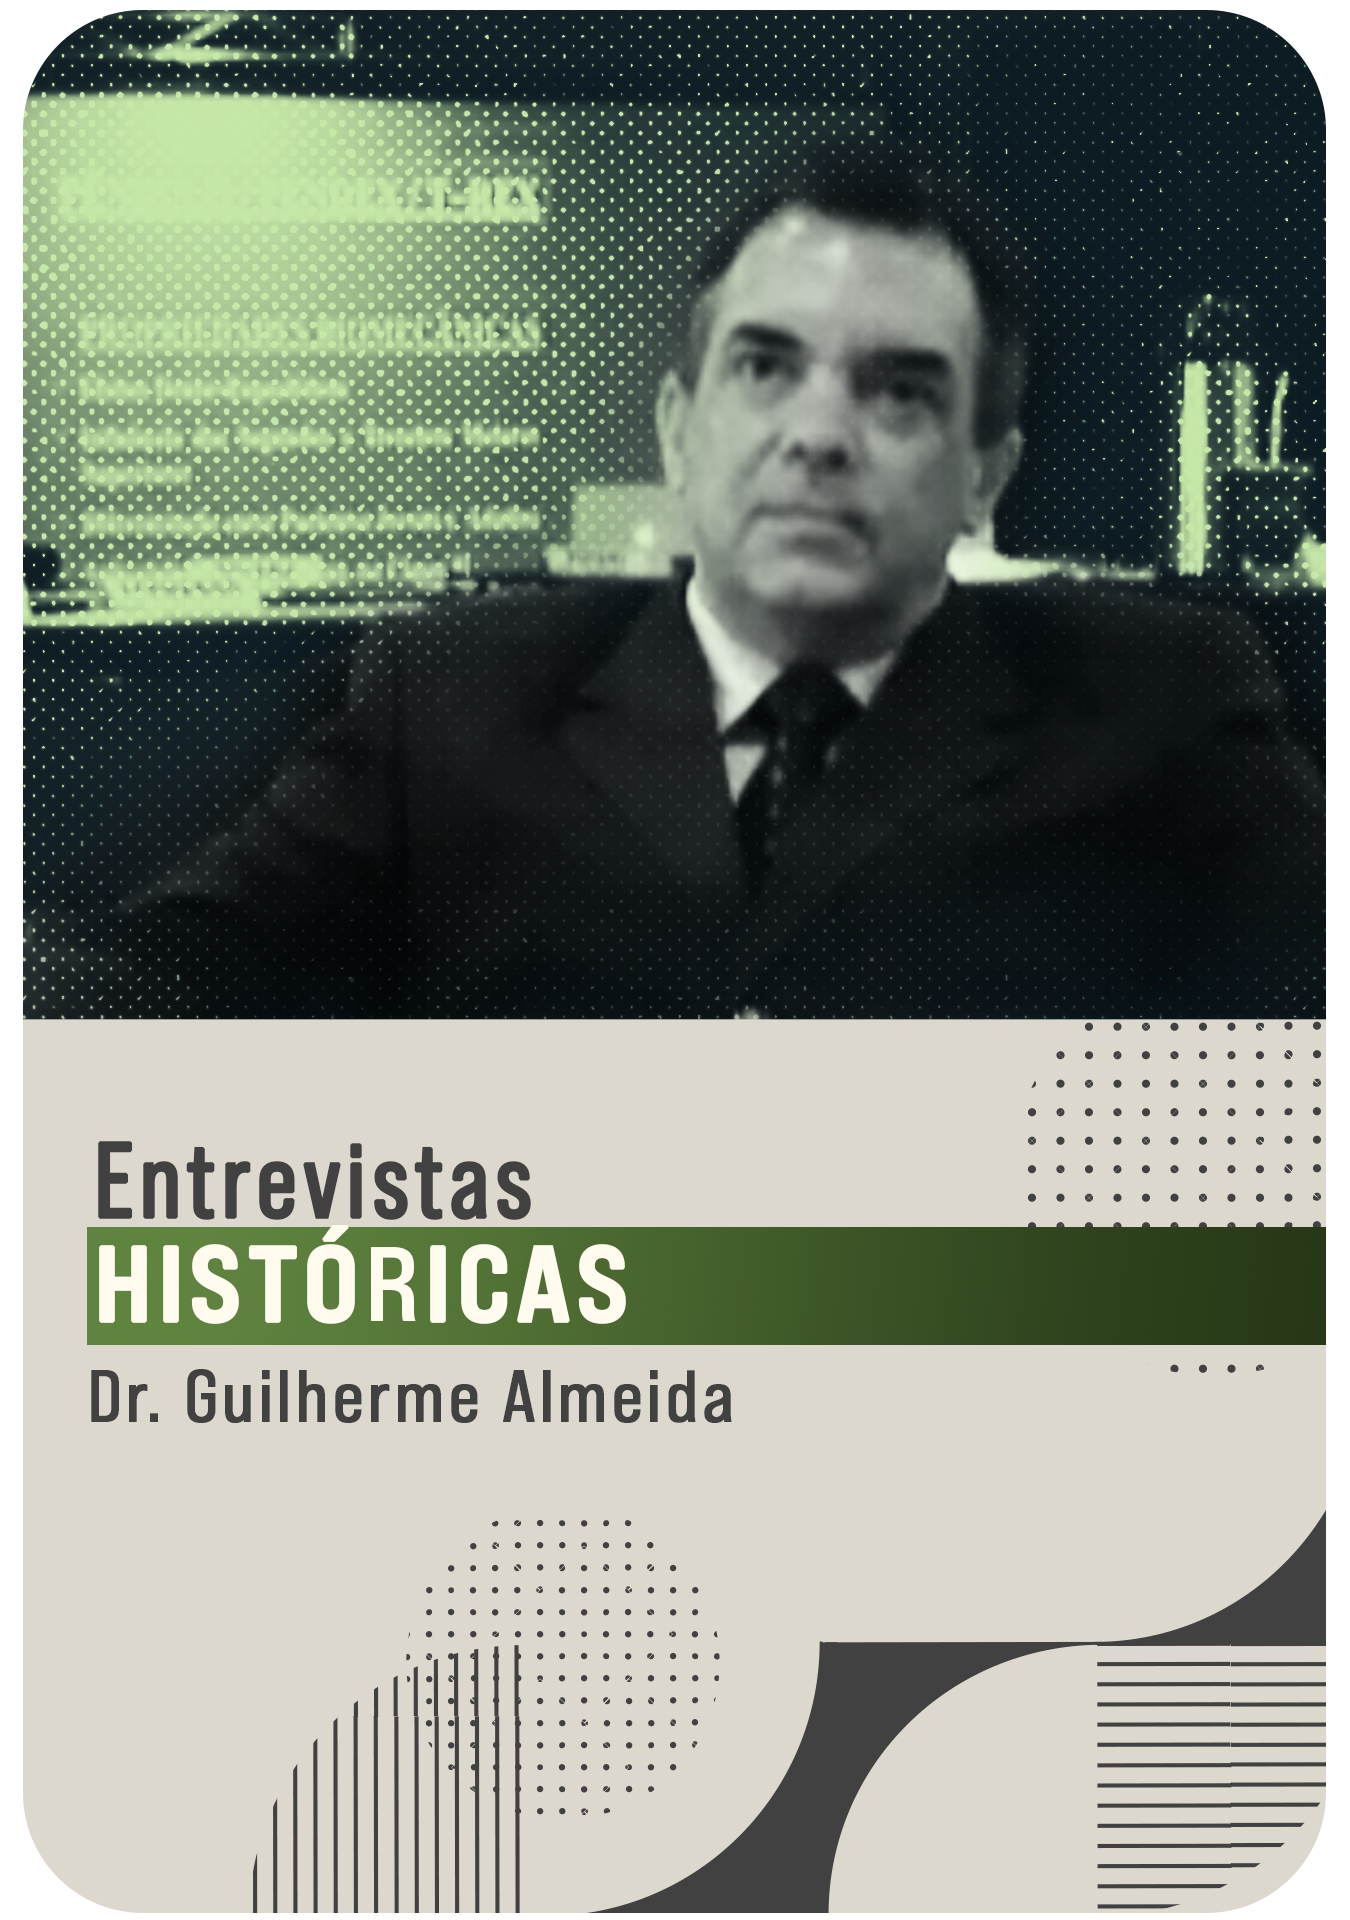 Dr. Guilherme Almeida